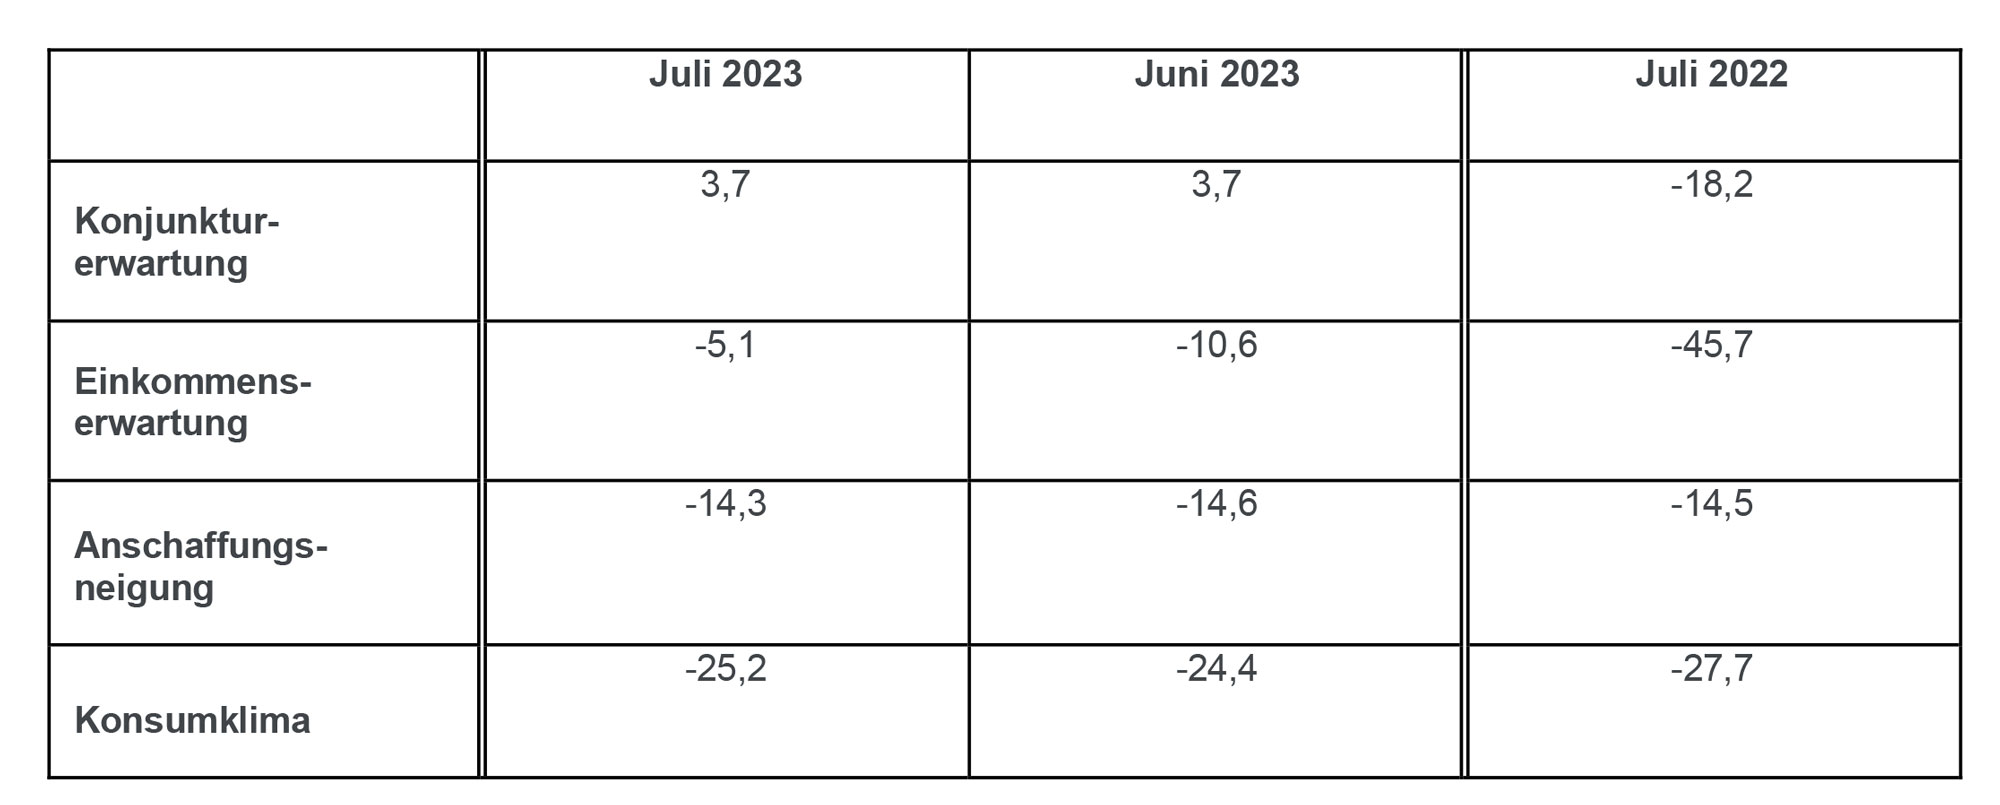 Die Tabelle zeigt die Werte der einzelnen Indikatoren im Juli im Vergleich zum Vormonat und zum Vorjahr.